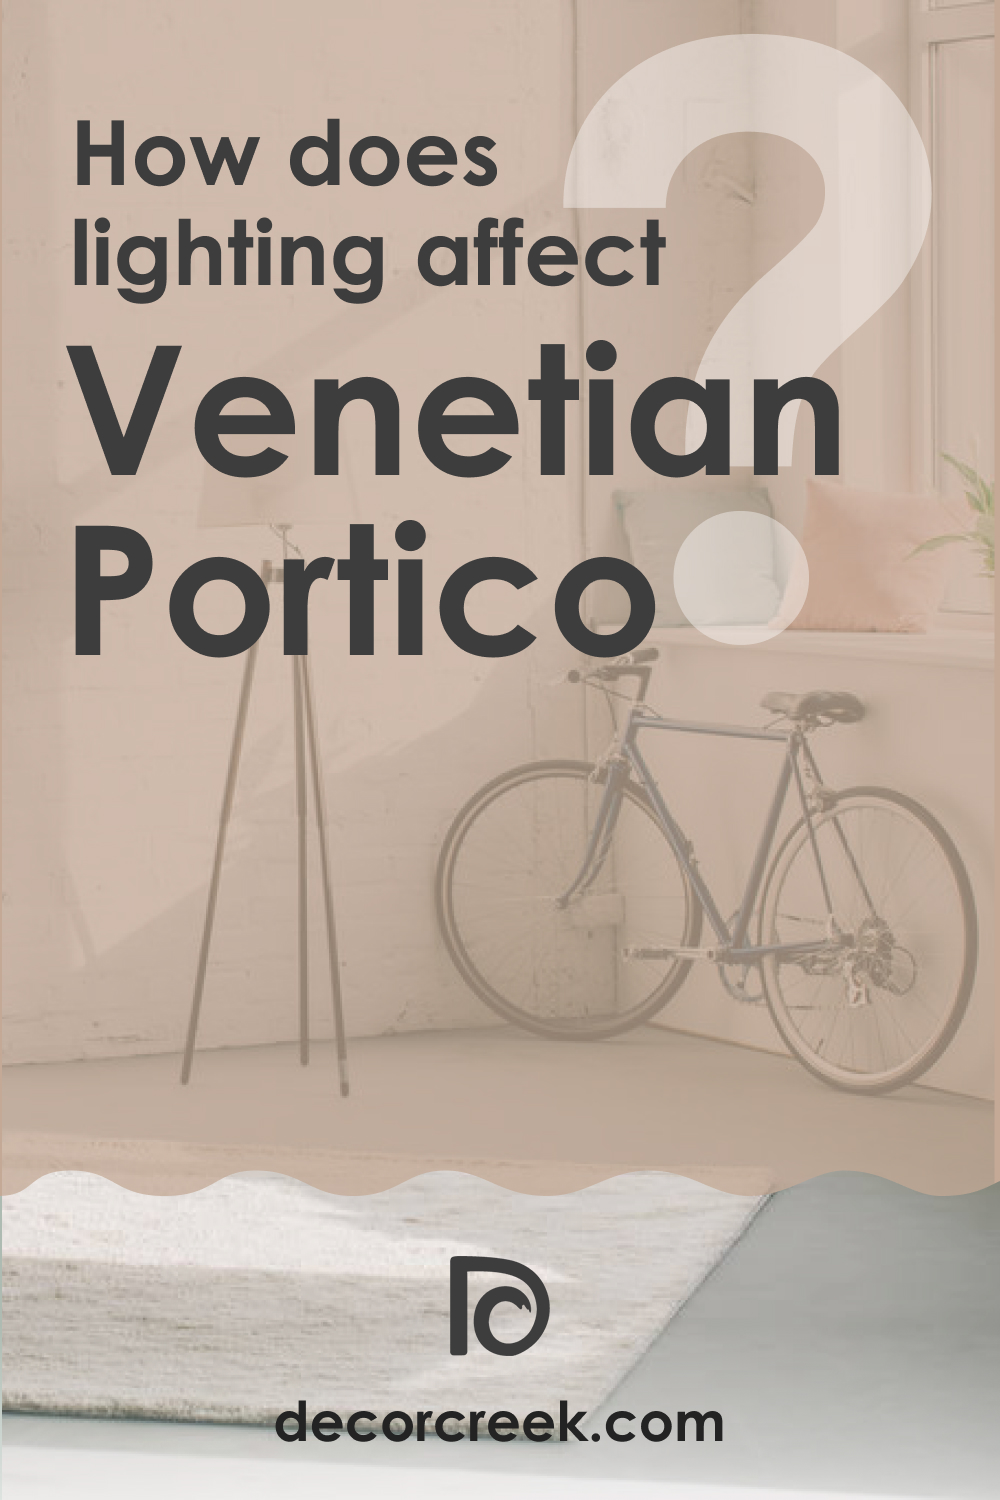 How Does Lighting Affect Venetian Portico AF-185?